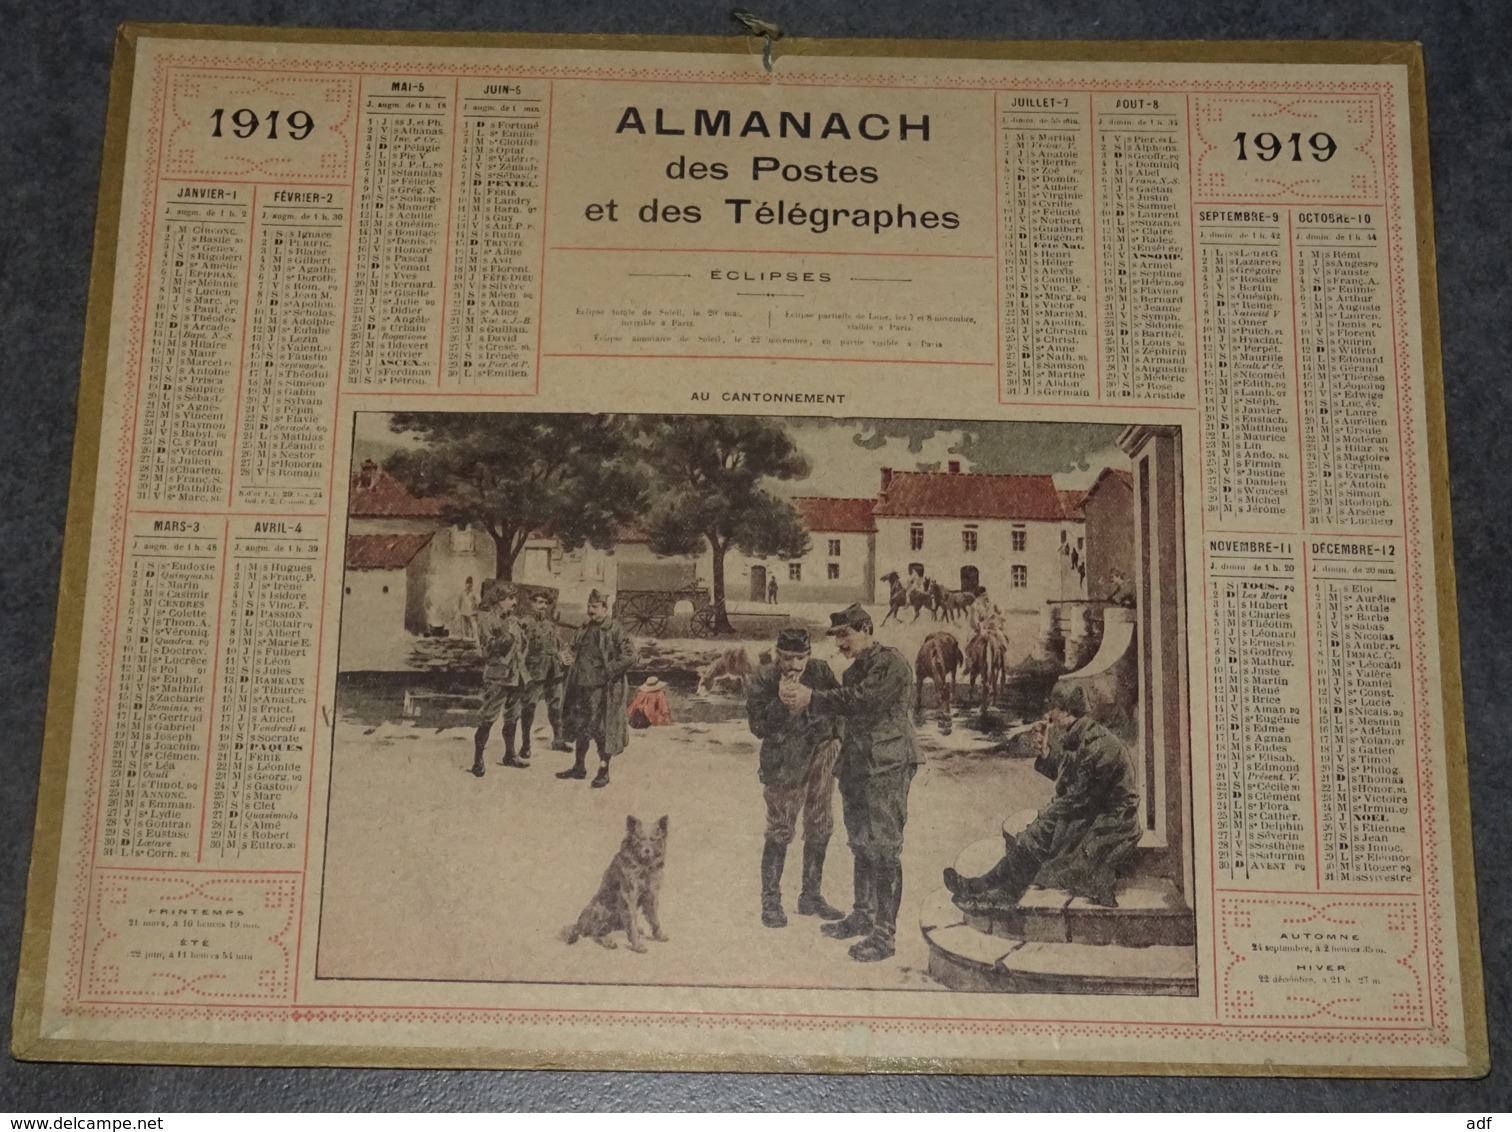 CALENDRIER ALMANACH DES POSTES ET TELEGRAPHES ANNEE 1919, ILLUSTRATION SCENE MILITAIRE " AU CANTONNEMENT ", SOLDATS - Grossformat : 1901-20